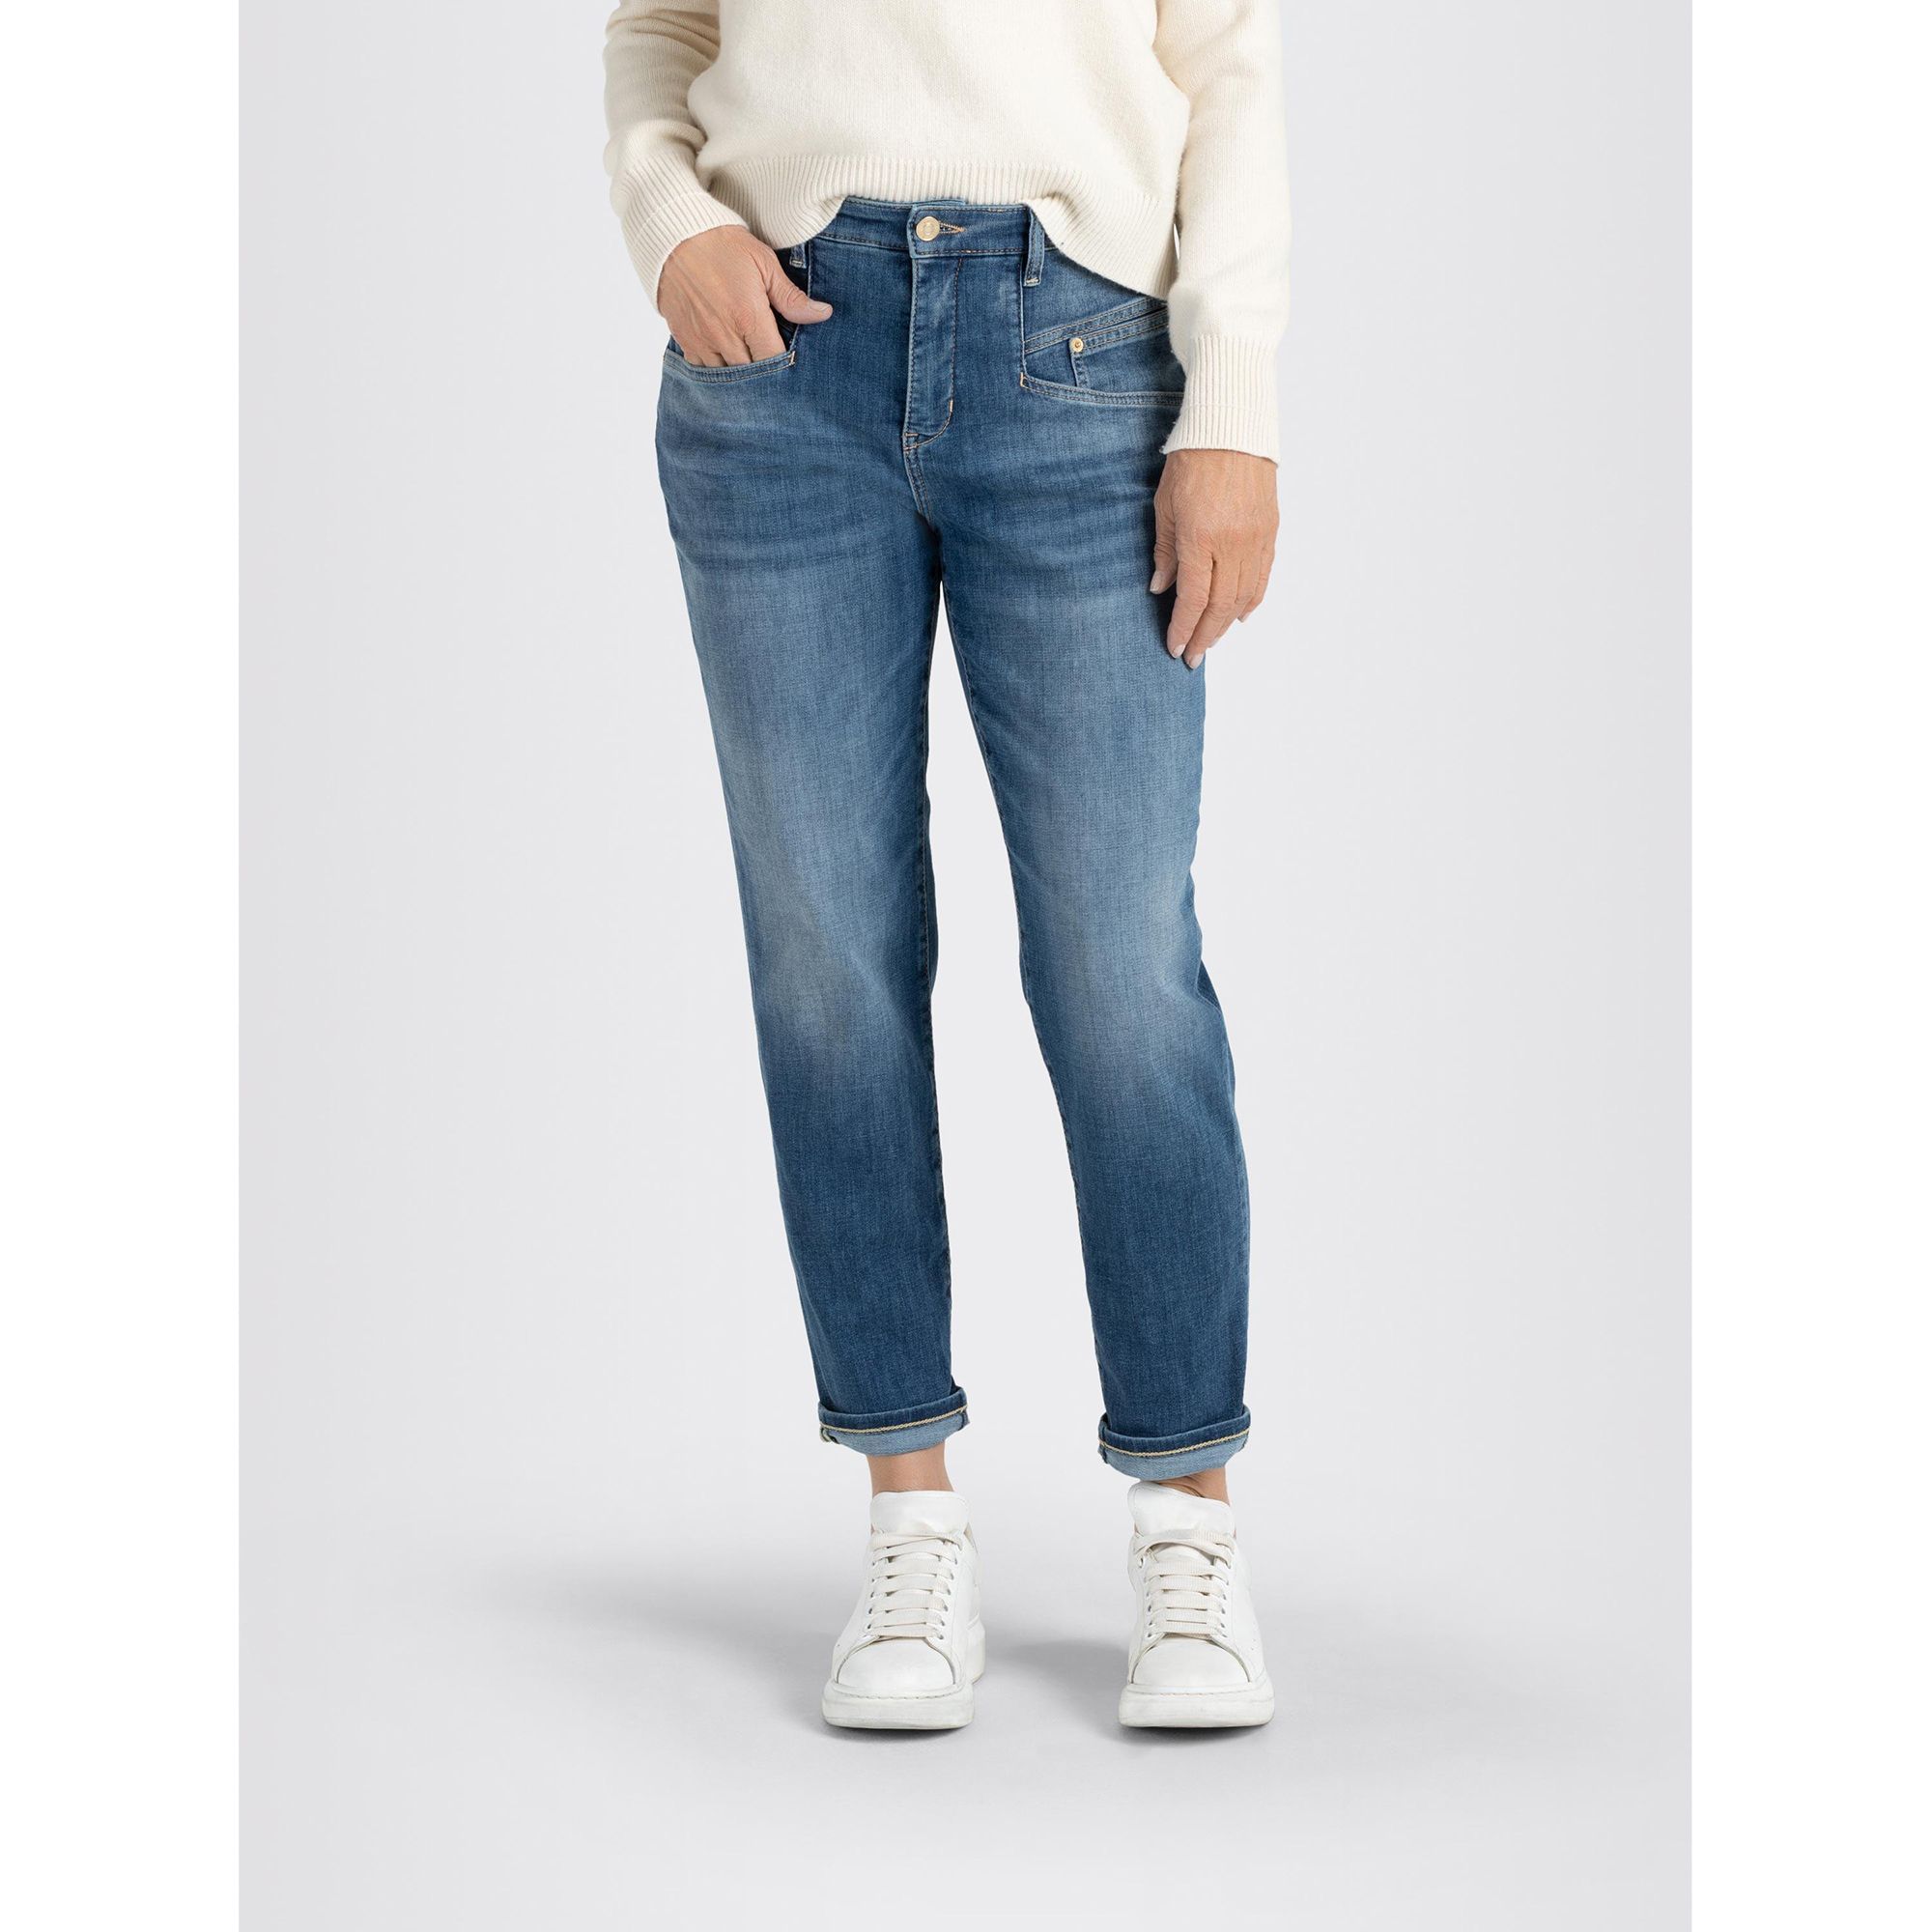 MAC Jeans Rich Carrot Leibhöhe hohe 5-Pocket-Style konischer Beinverlauf